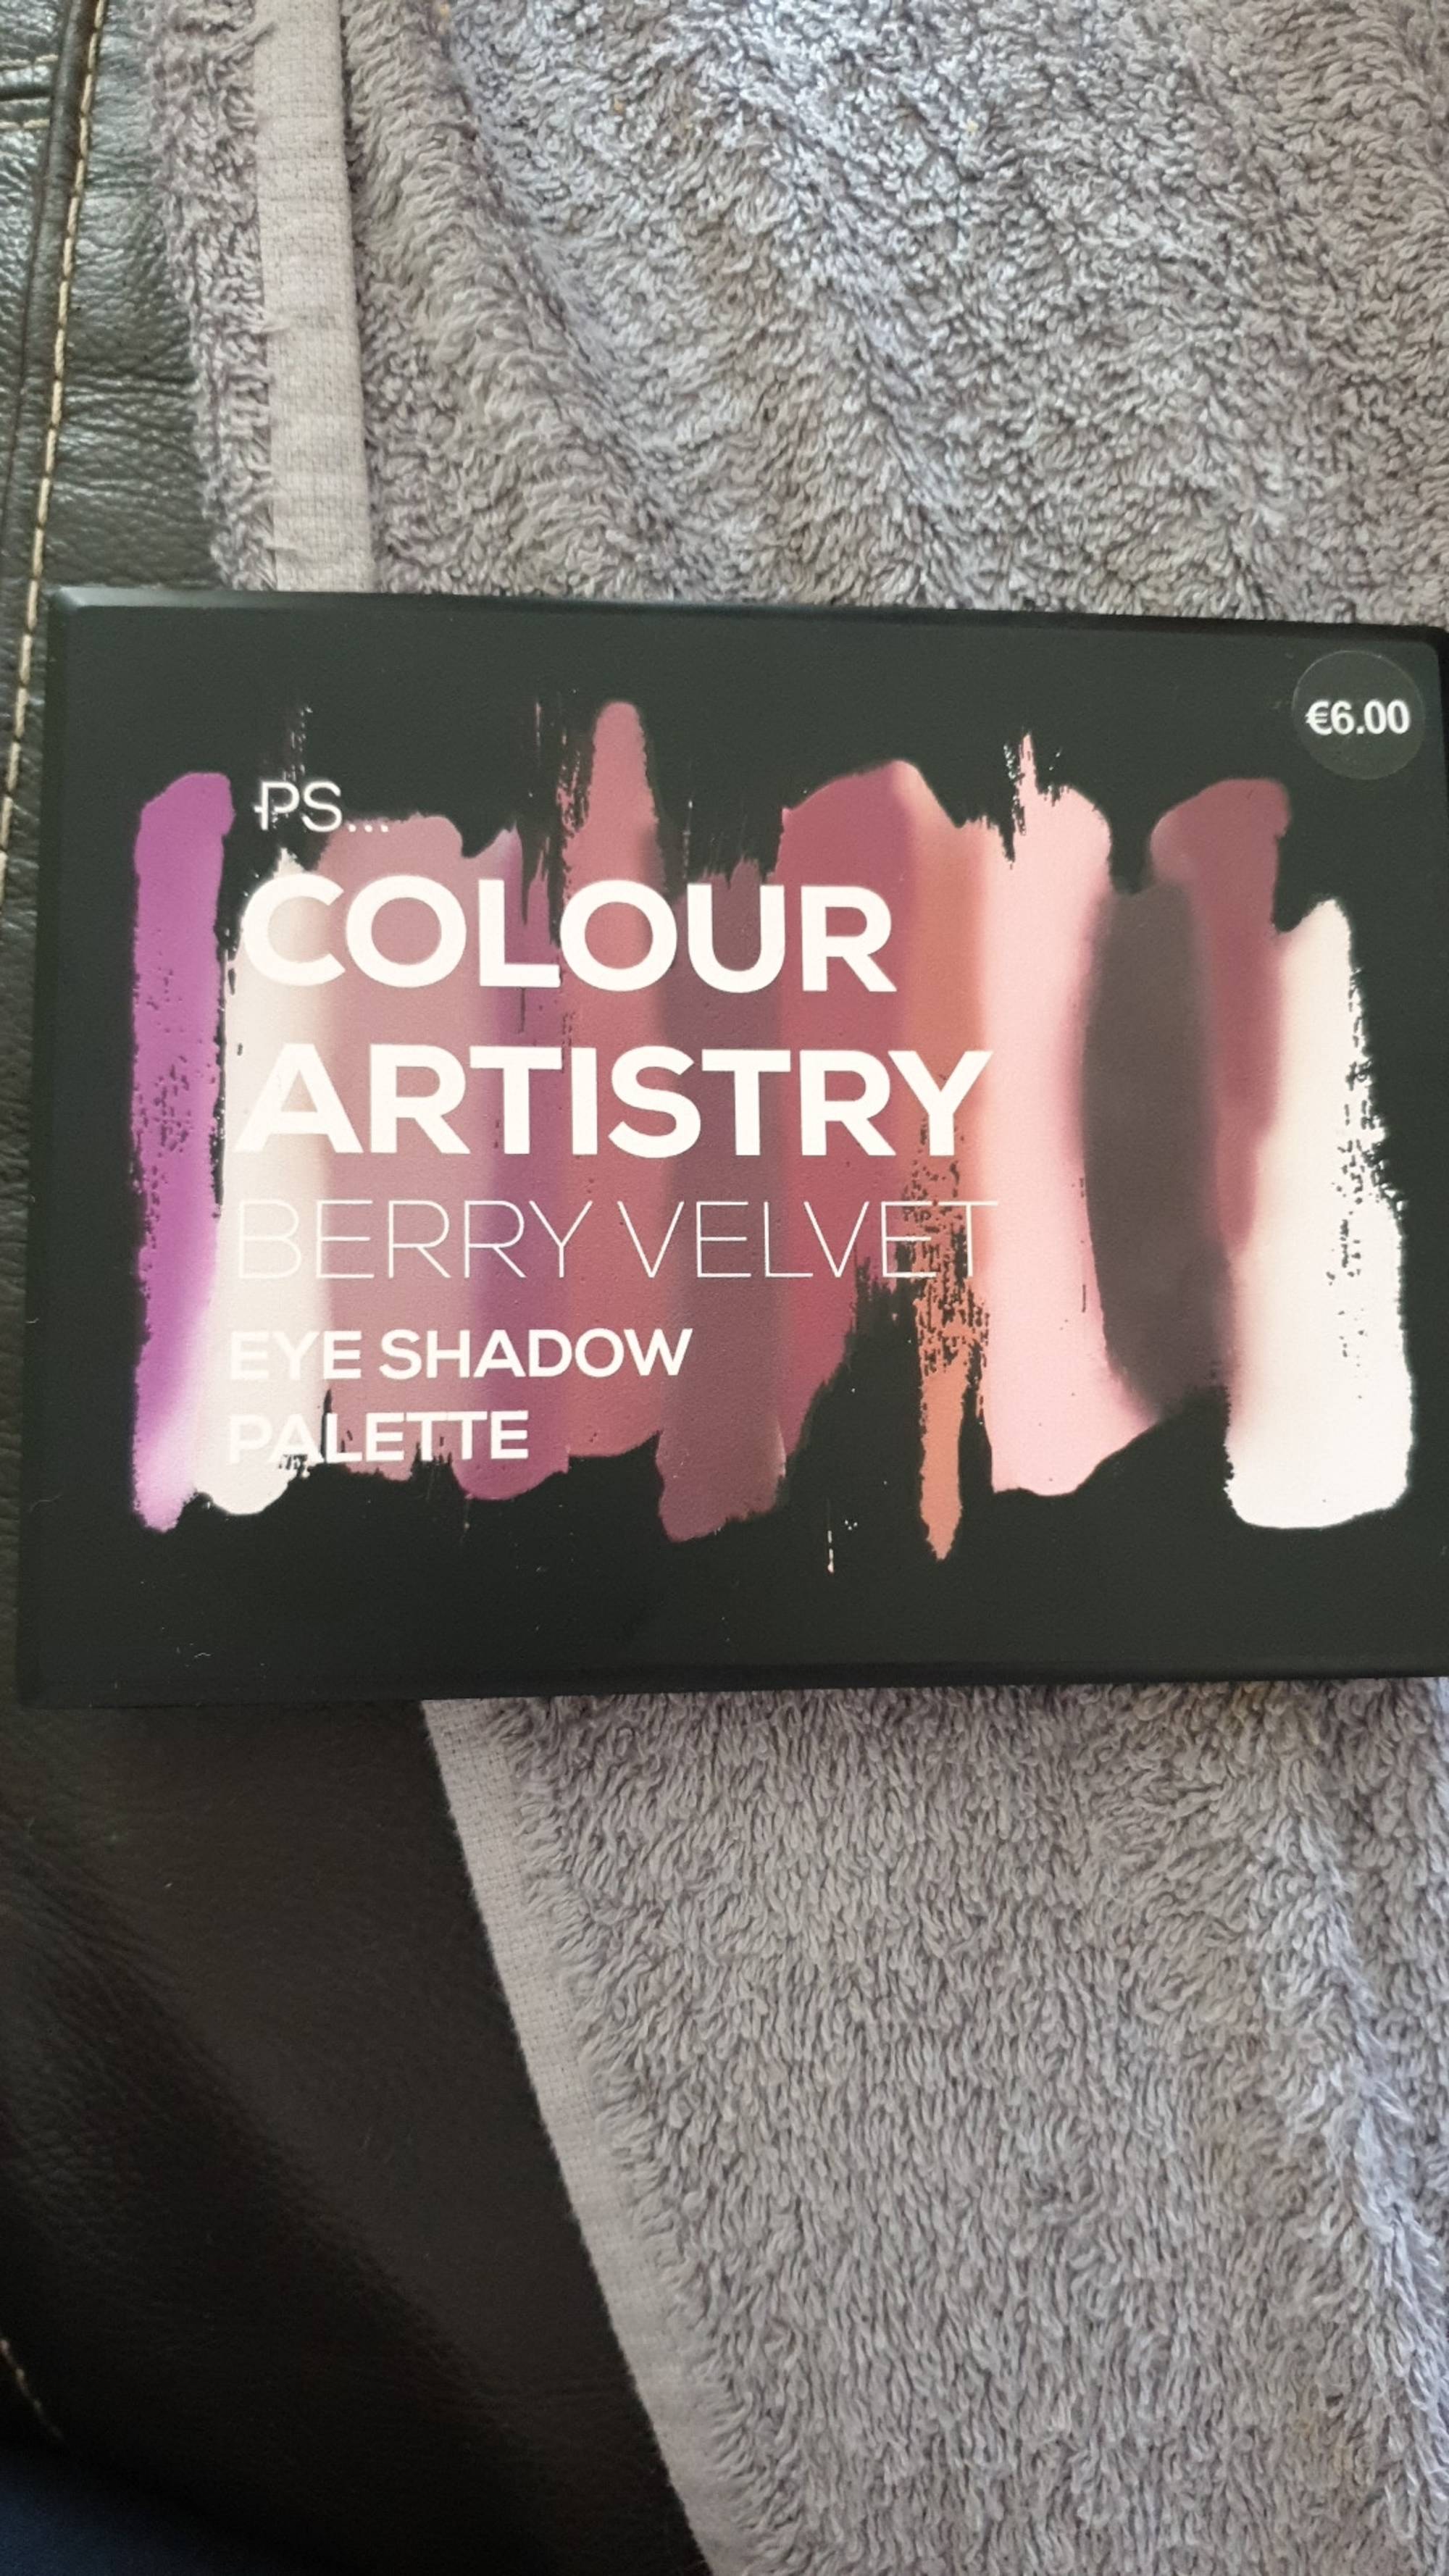 PRIMARK - Colour artistry - Berry velvet, eye shadow palette